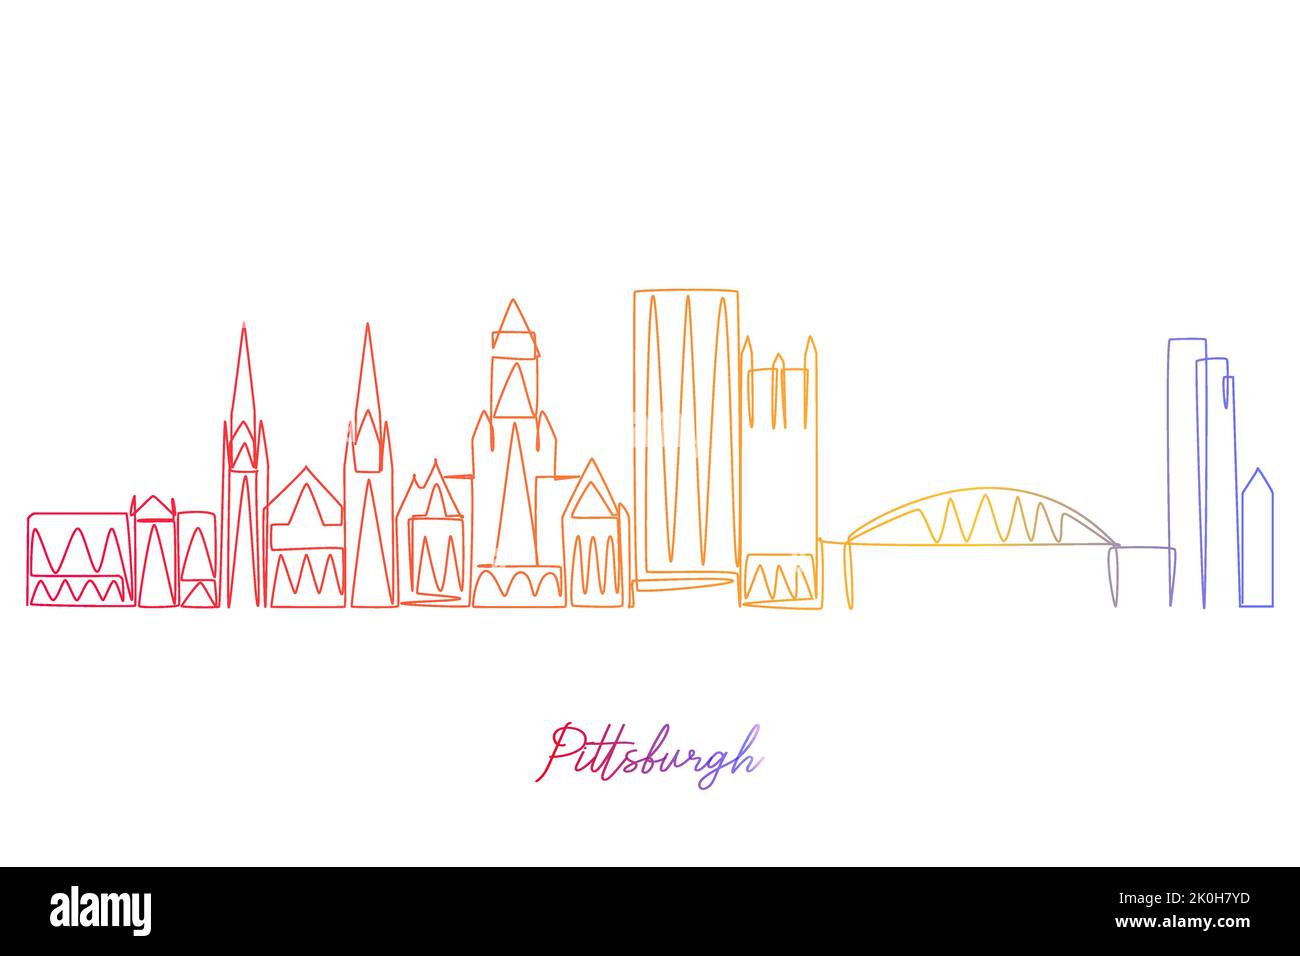 Fortlaufende Einzelzeilenzeichnung von Pittsburg, Pennsylvania, USA. Einfaches, gradientenfarbenes, handgezeichnetes Design im Stil einer Linie für Reise- und Zielorte Stock Vektor